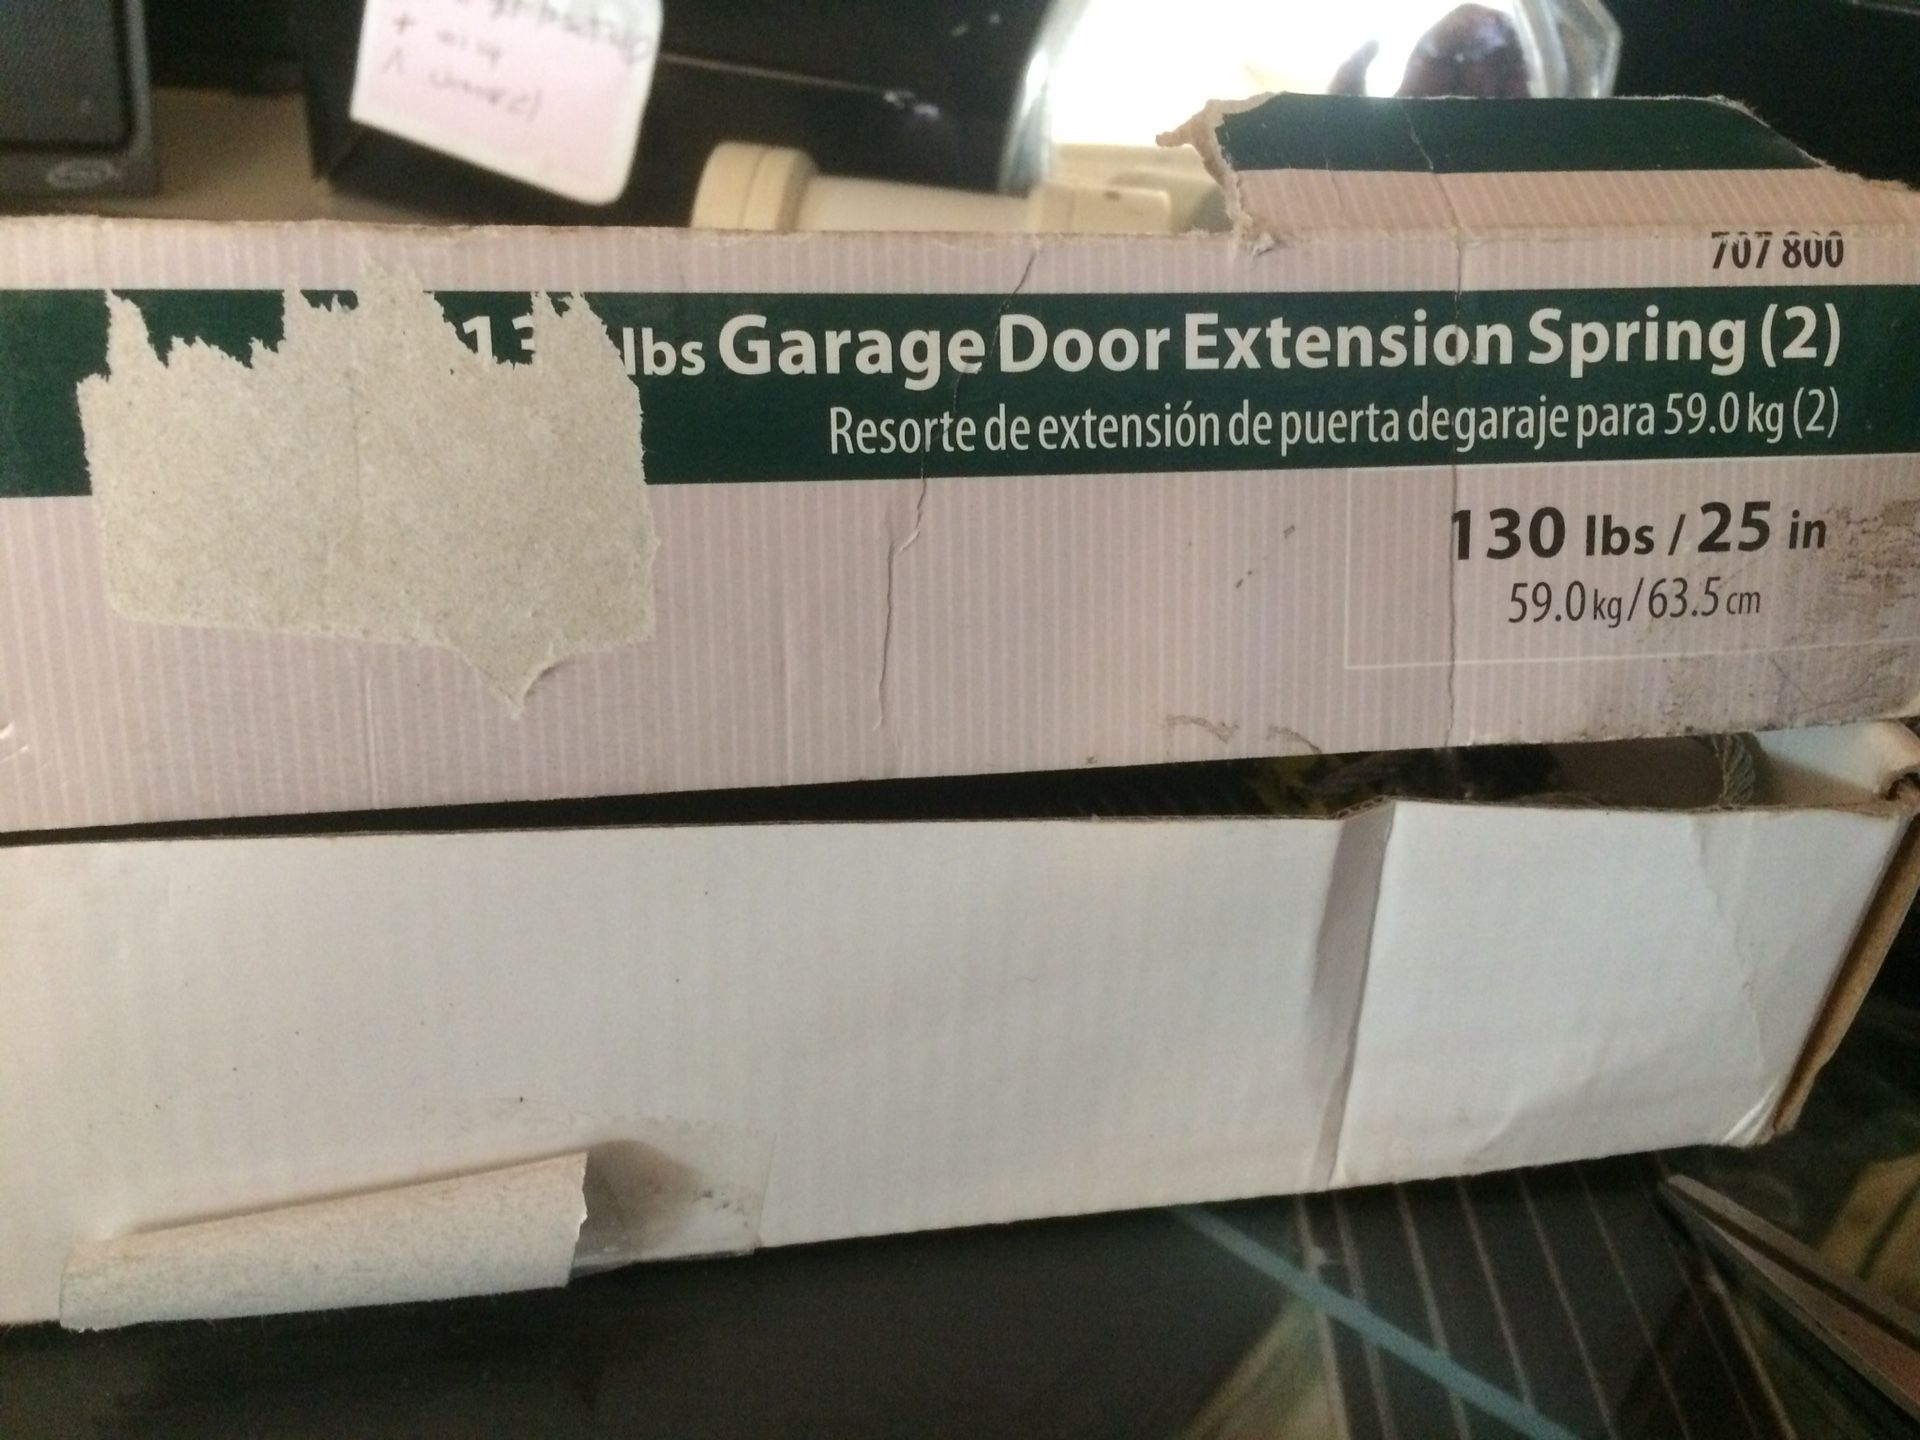 New garage door springs